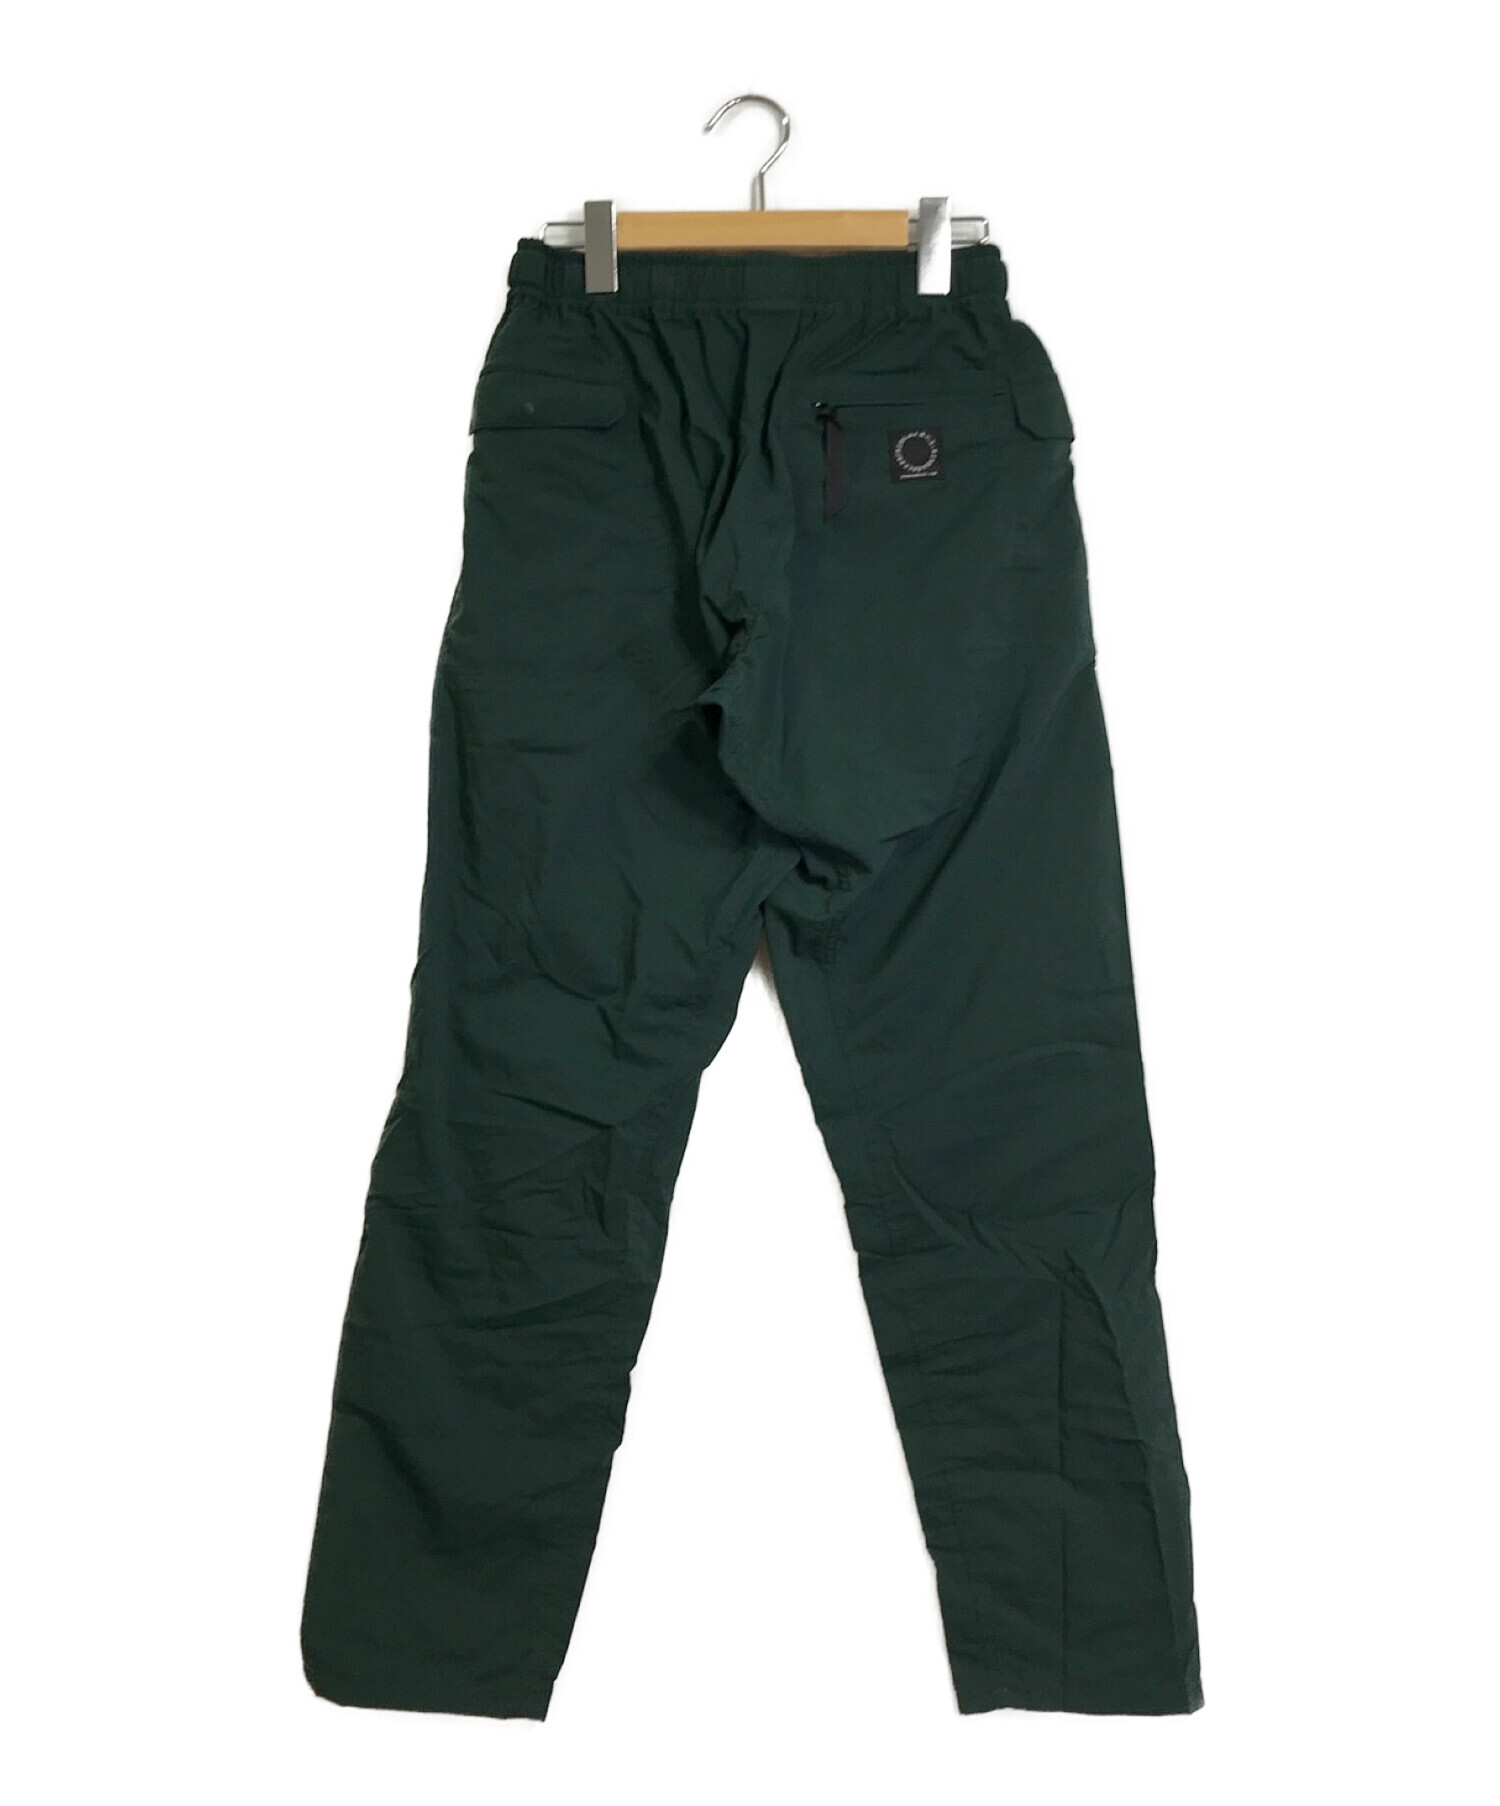 山と道 (ヤマトミチ) 5-Pocket Pants グリーン サイズ:実寸参照